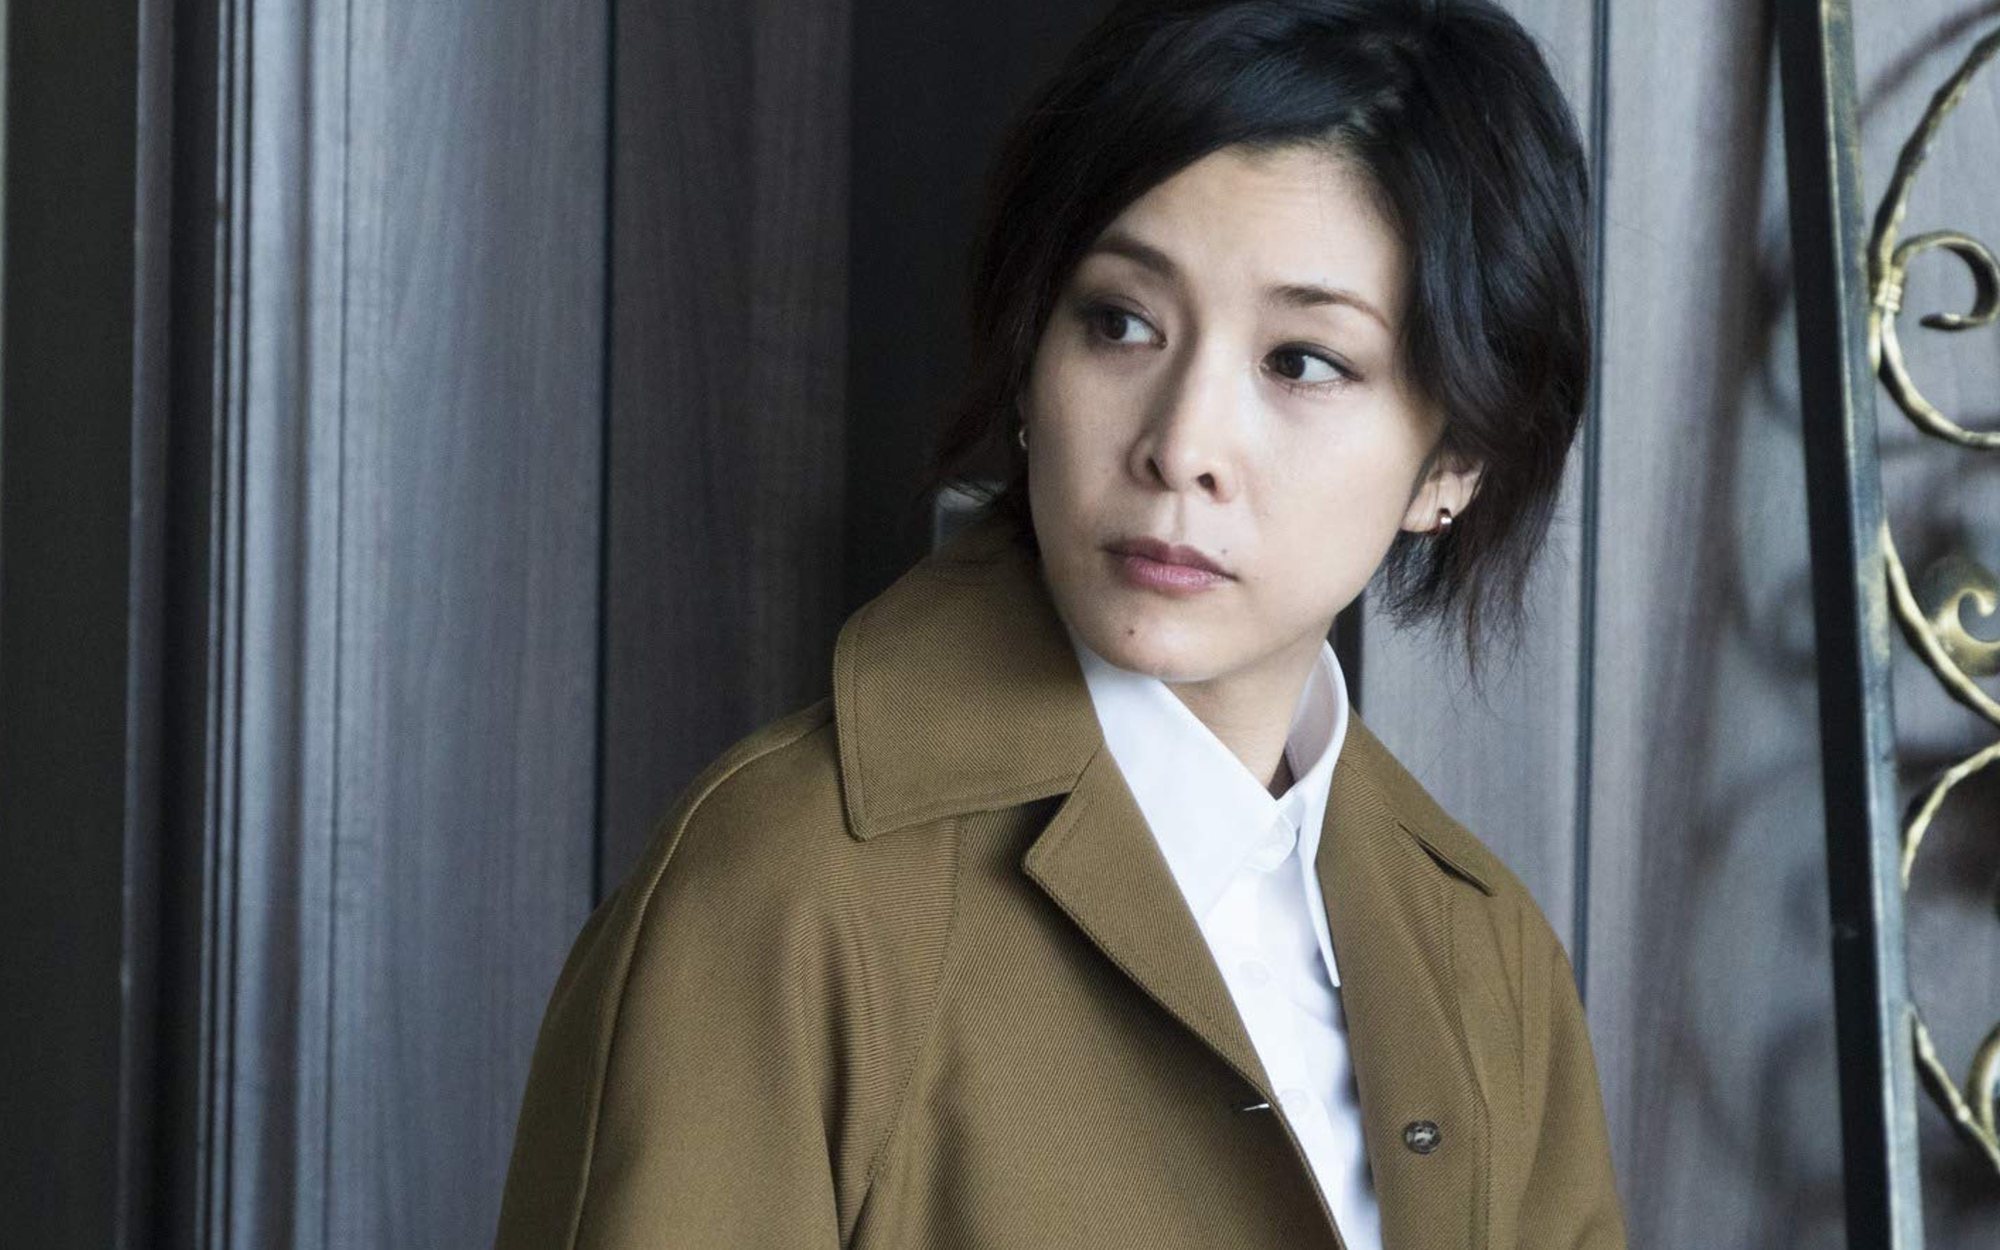 Muere Yuko Takeuchi, actriz de "The Ring" y 'Miss Sherlock', a los 40 años